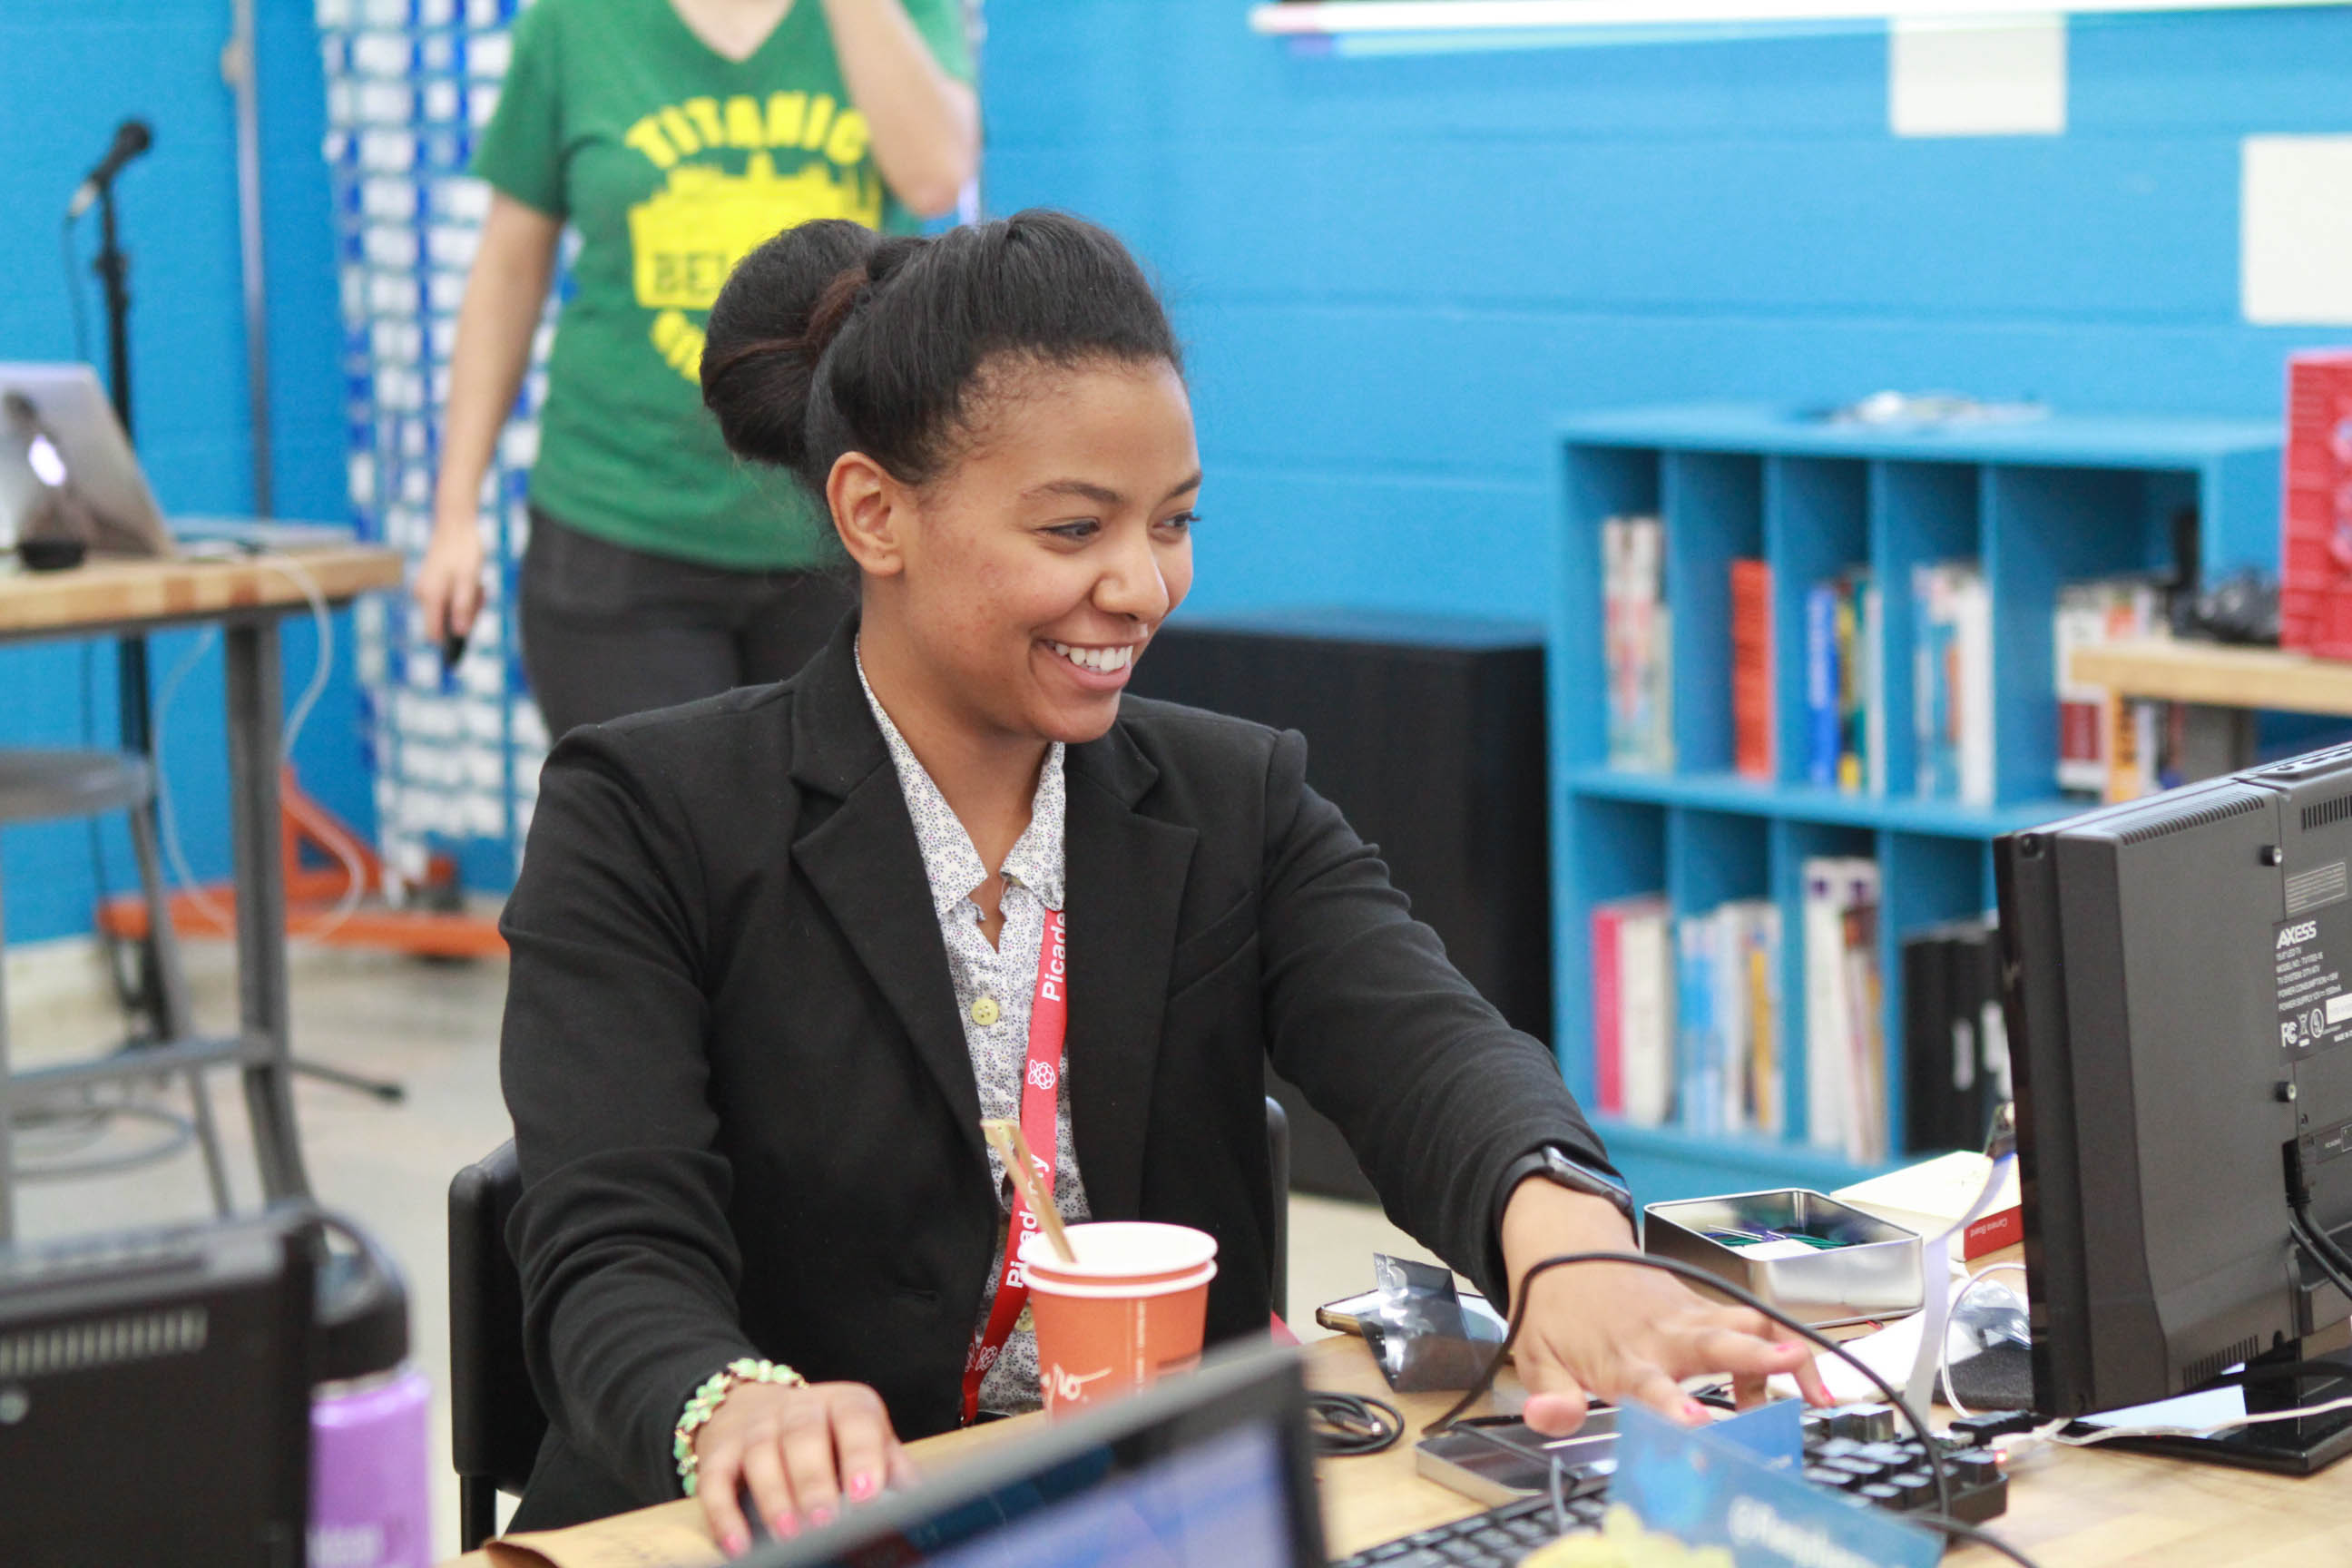 A smiling teacher at a computer